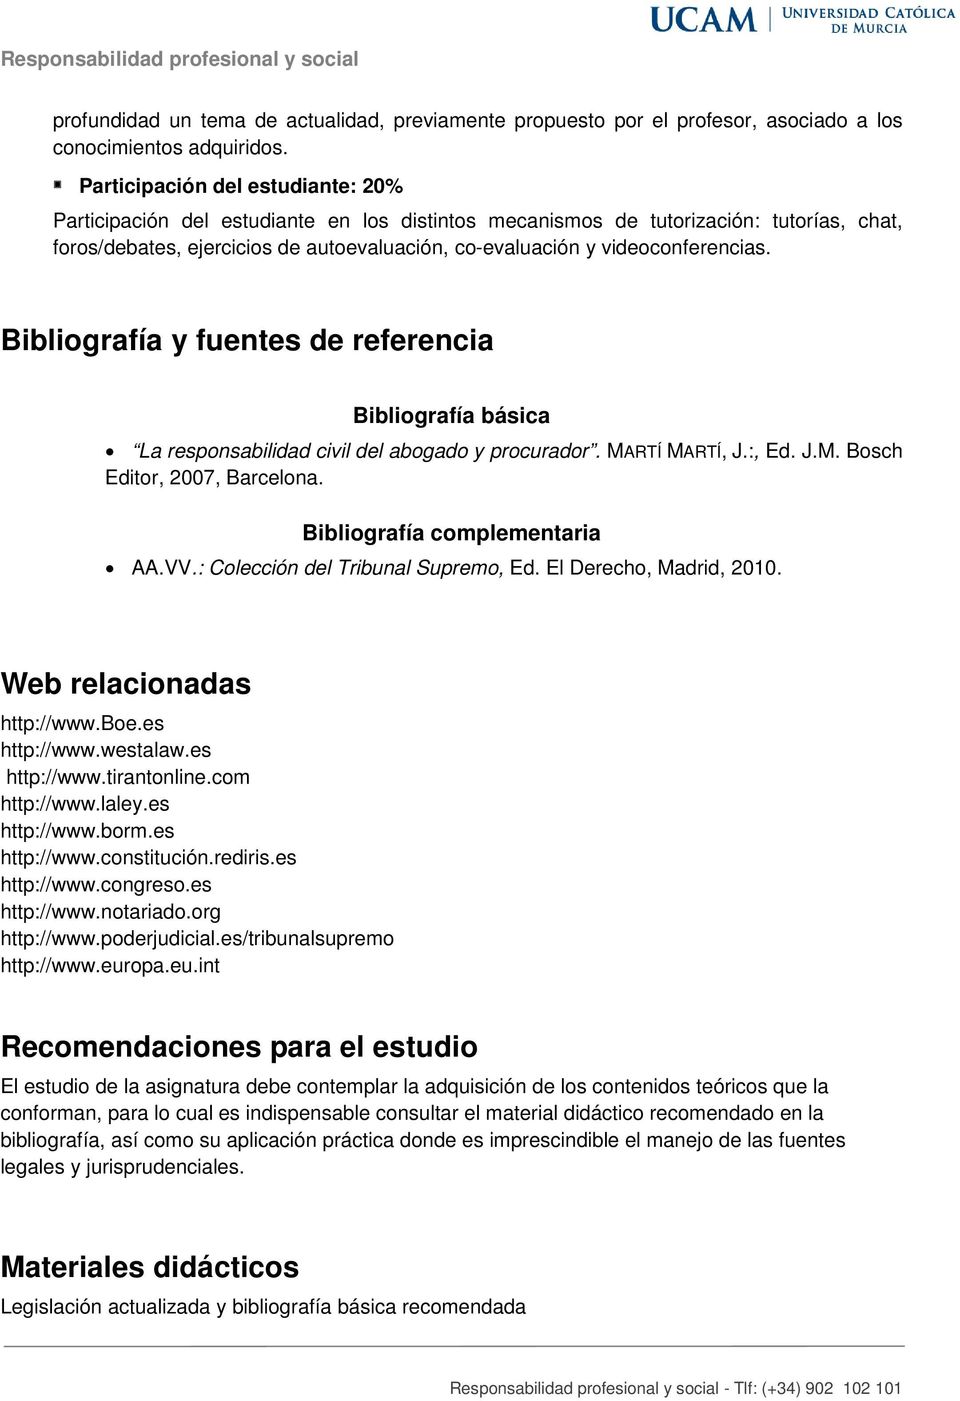 videoconferencias. Bibliografía y fuentes de referencia Bibliografía básica La responsabilidad civil del abogado y procurador. MARTÍ MARTÍ, J.:, Ed. J.M. Bosch Editor, 2007, Barcelona.